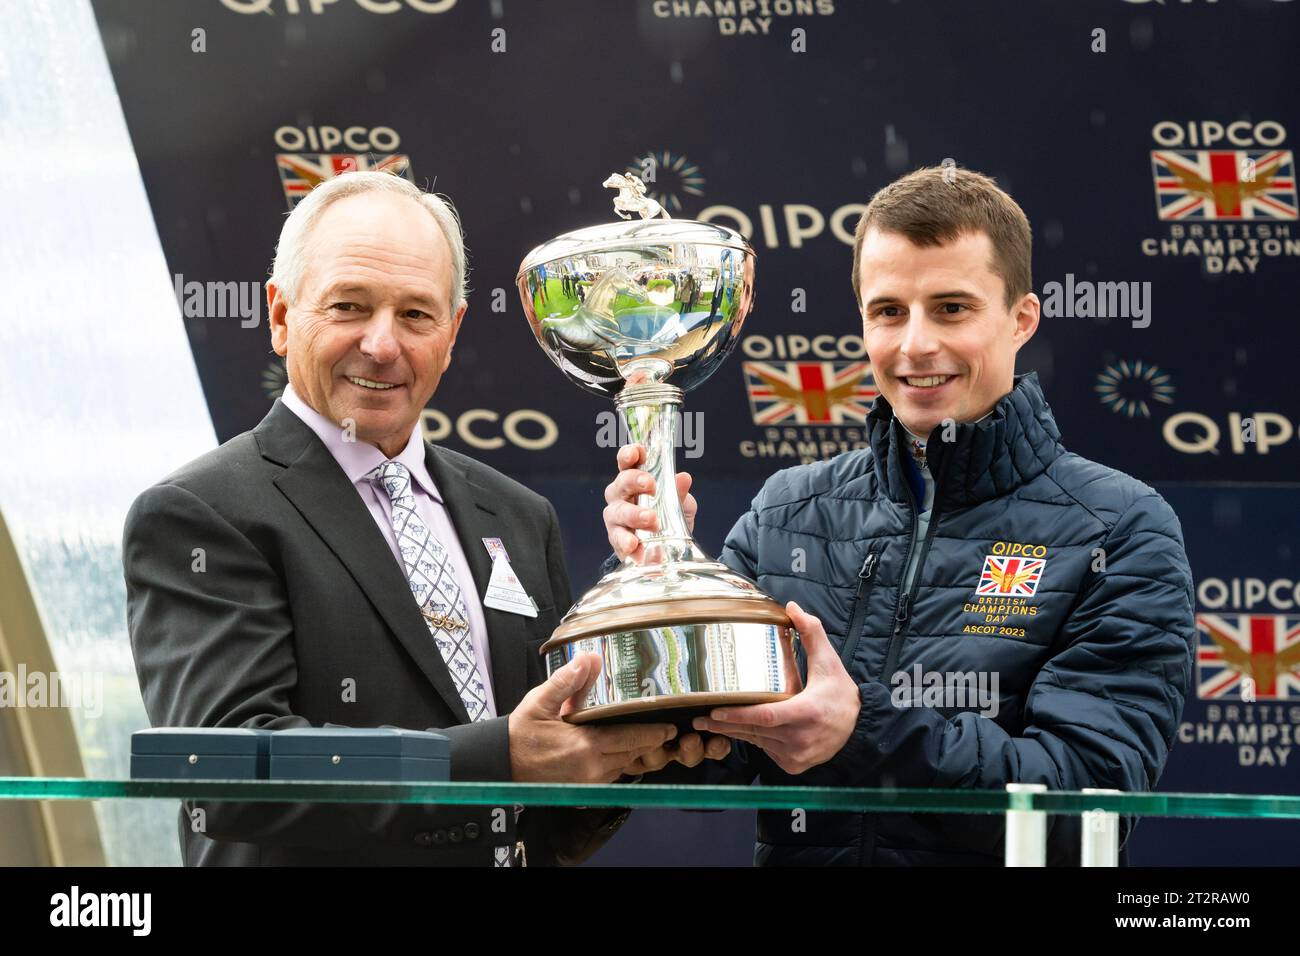 Ascot Racecourse, Berkshire, Royaume-Uni ; le jockey William Buick reçoit le trophée de Jockey Champion 2023 par Steve Cauthen, à l'hippodrome d'Ascot lors de la QIPCO British Champions Day 2023. Crédit JTW Equine Images / Alamy Live News Banque D'Images